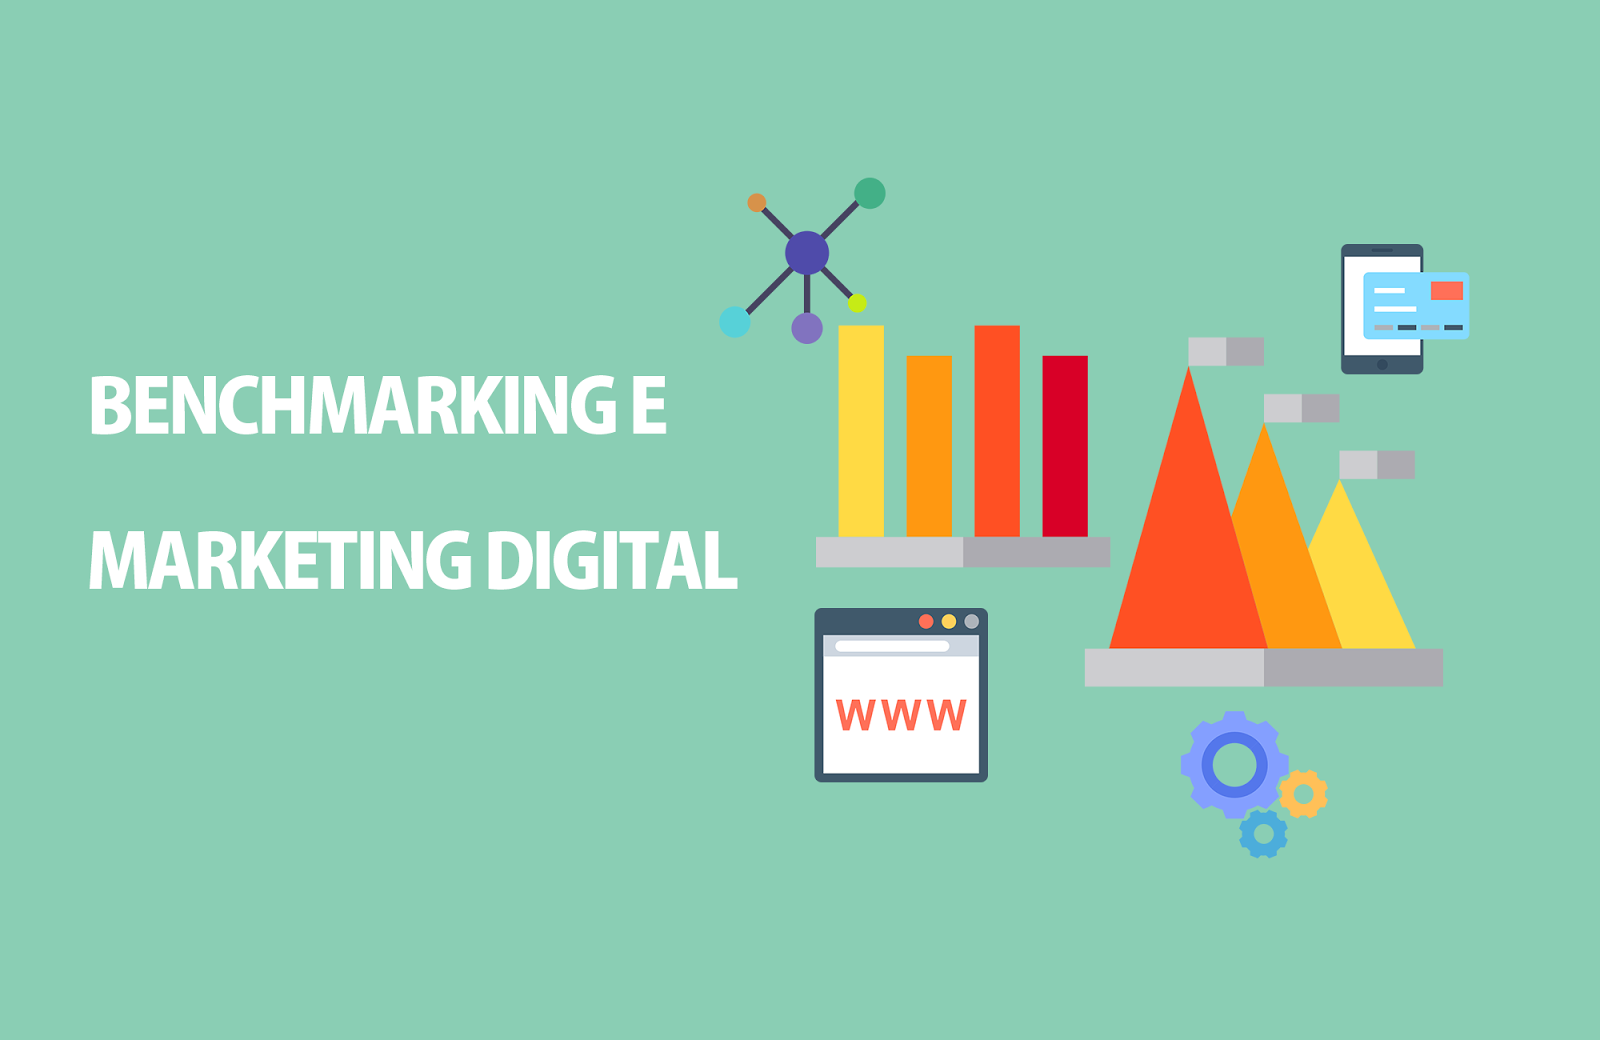 Marketing Digital - O que é benchmarking